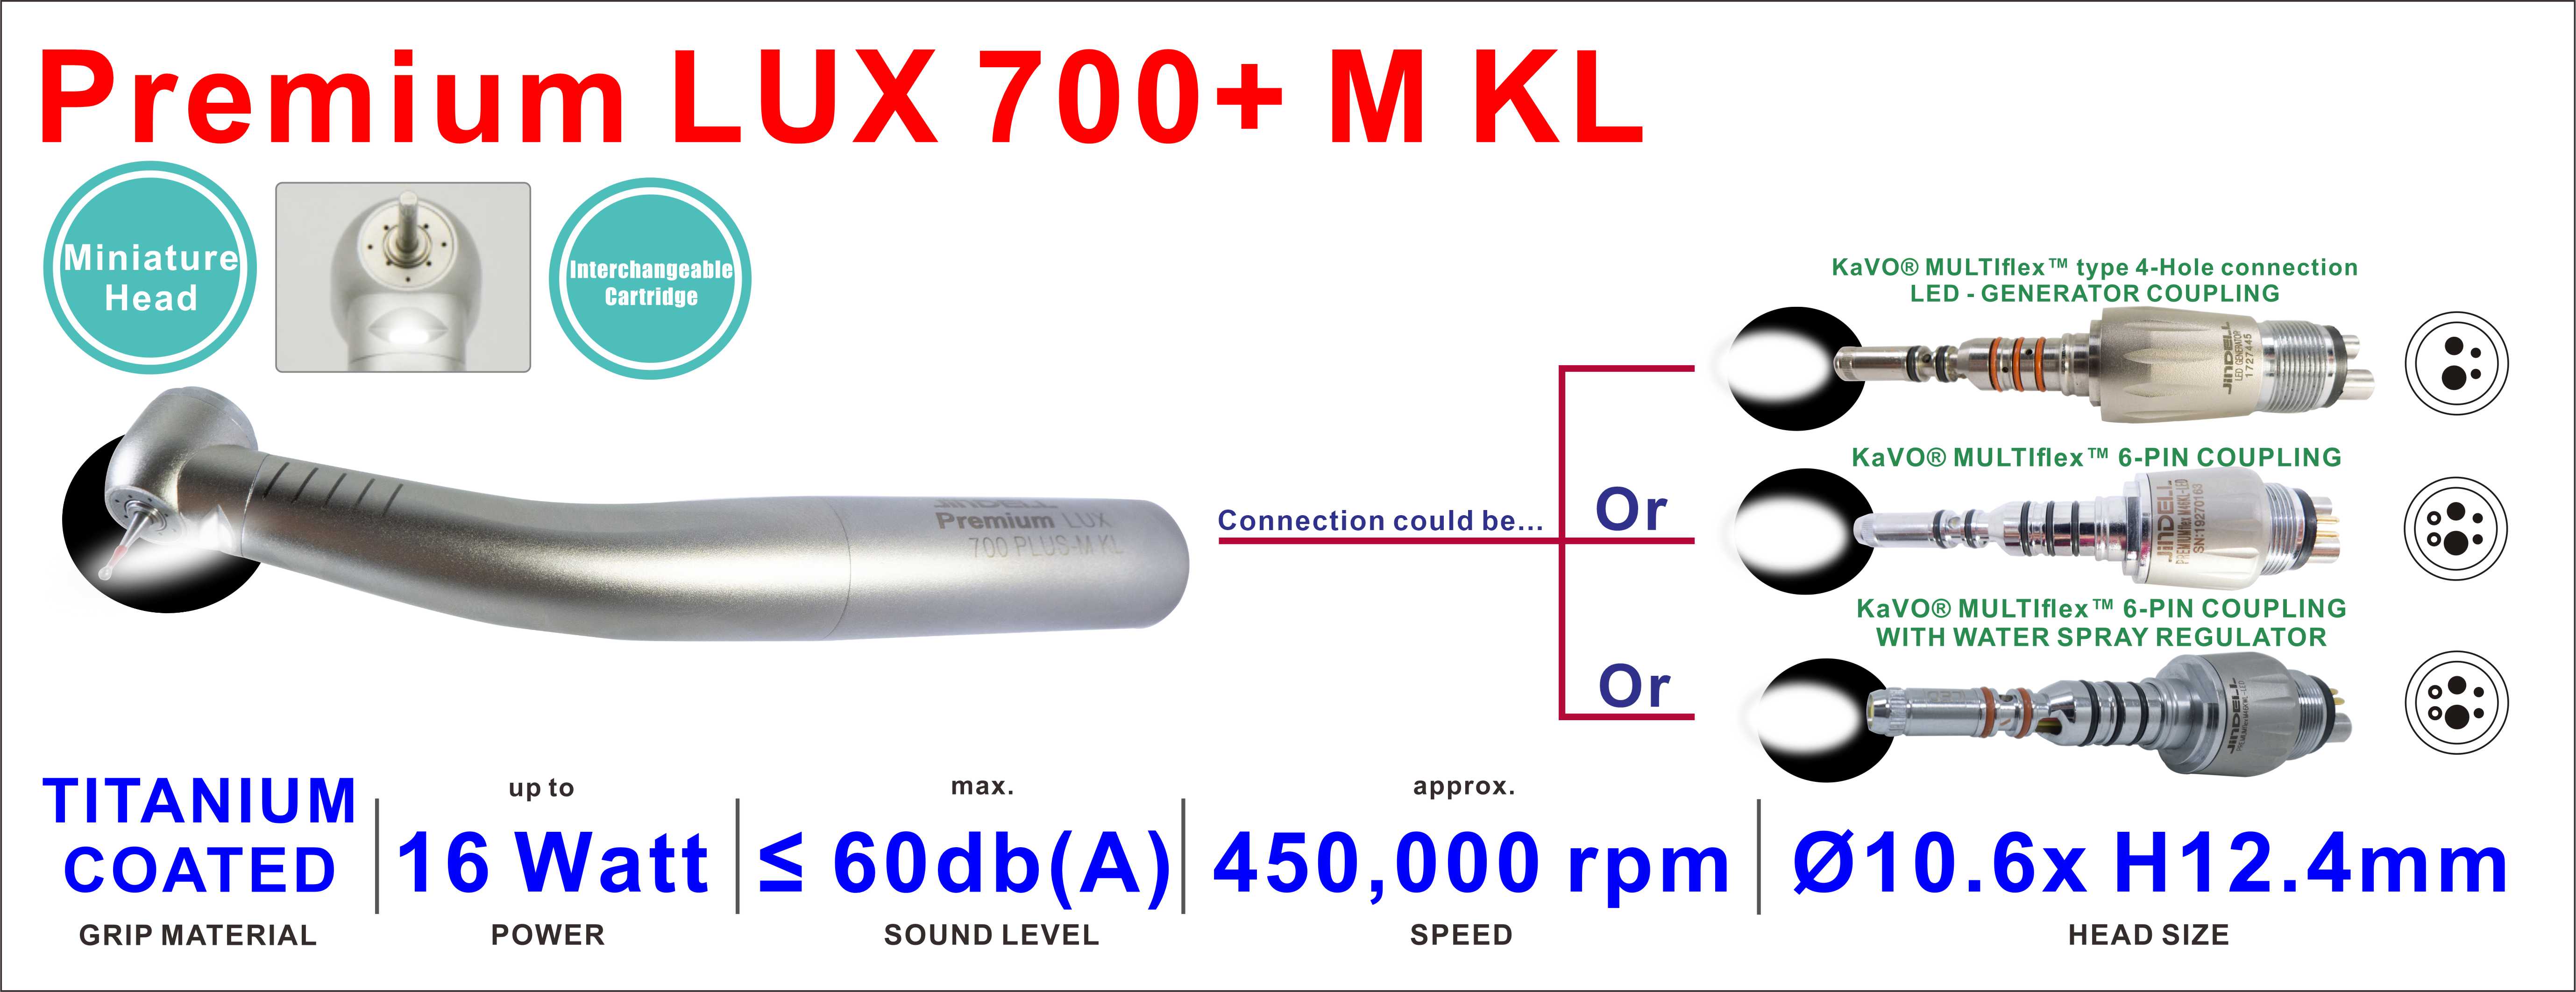 Premium LUX 700+M KL